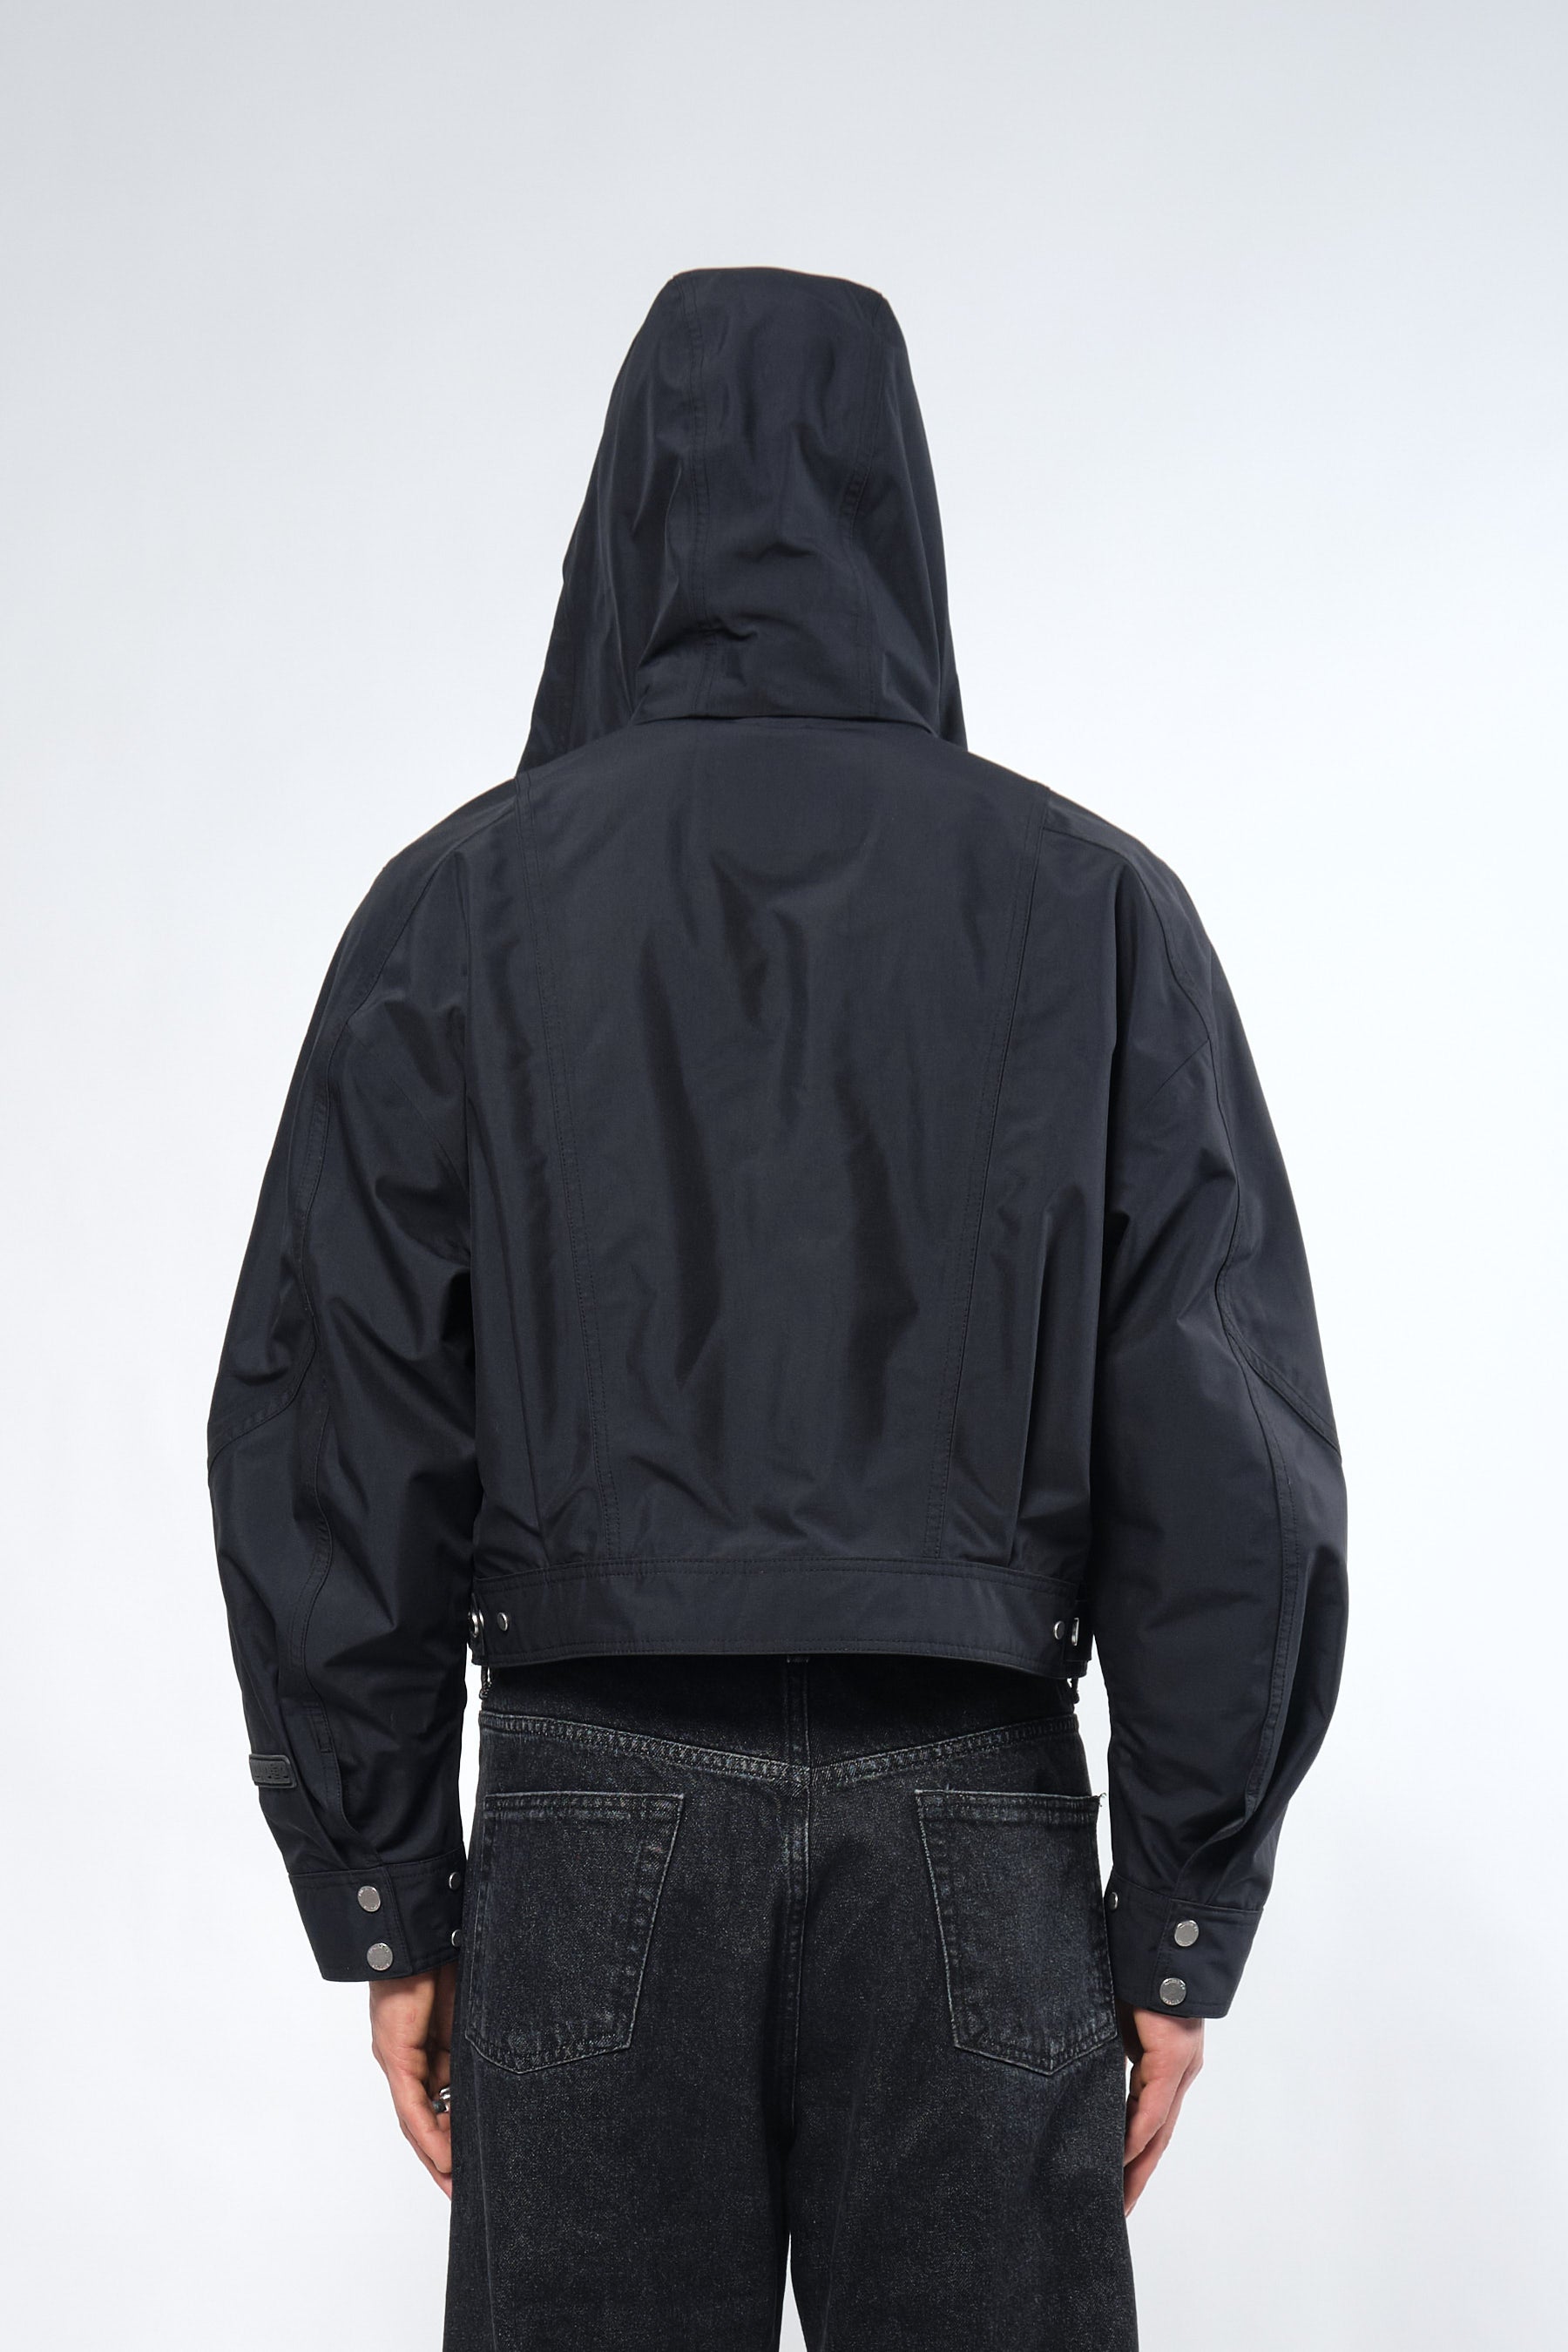  3L Black Waterproof Crop Rain Jacket with Hood - Adhere To  - 7